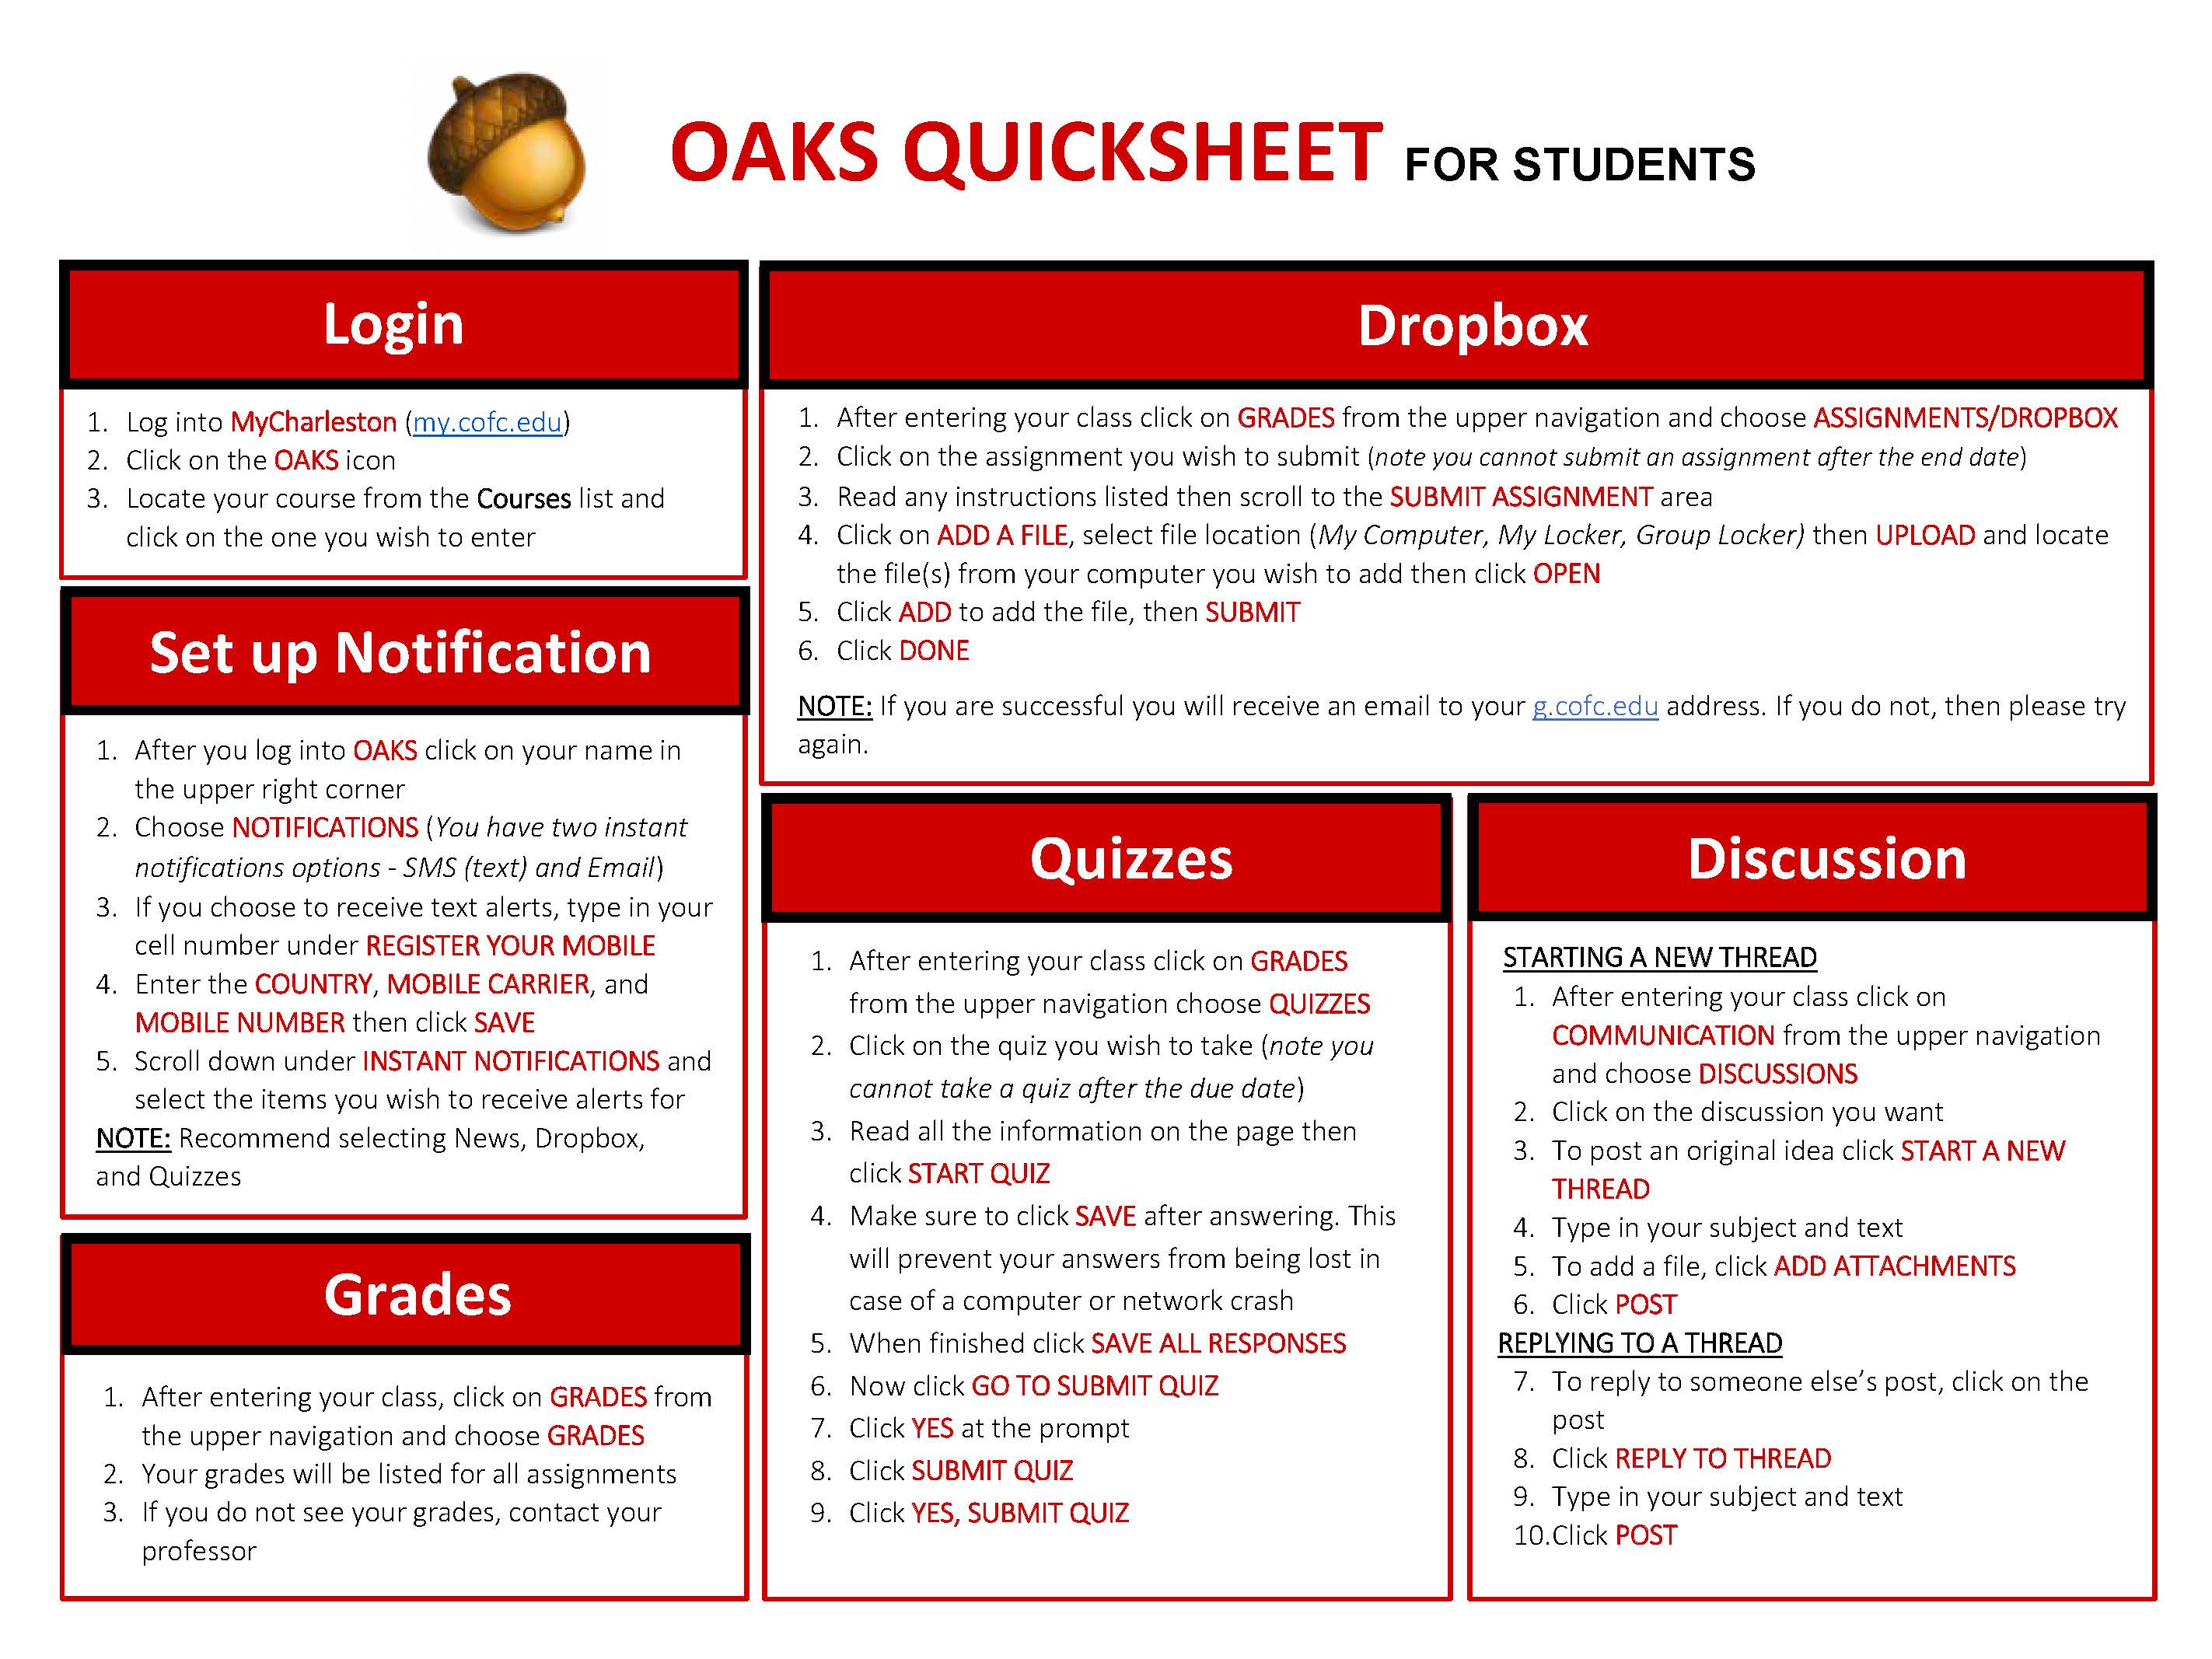 oaks-student-guide.jpg